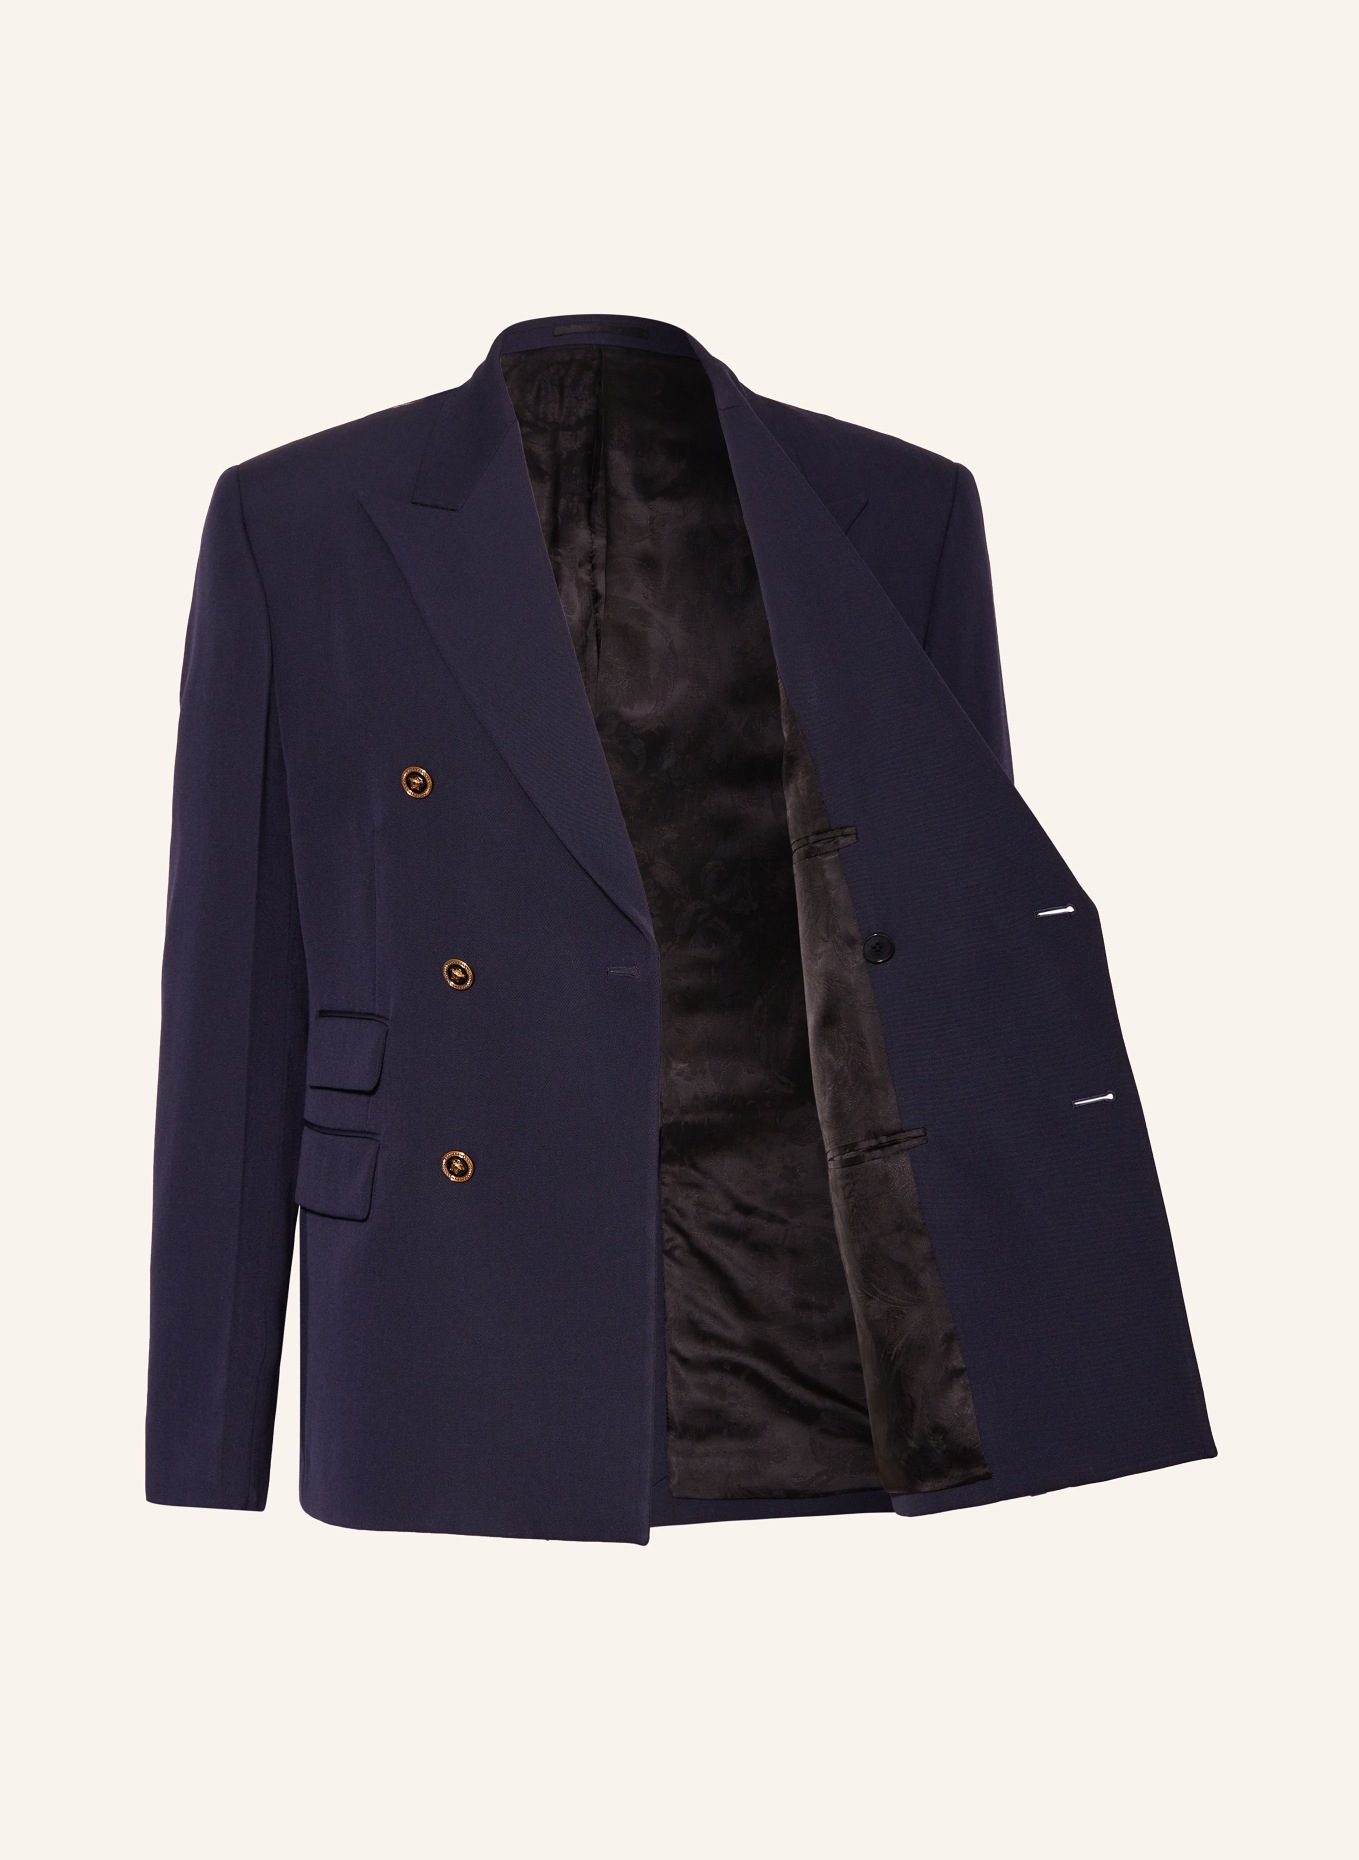 VERSACE Tailored jacket regular fit, Color: DARK BLUE (Image 4)